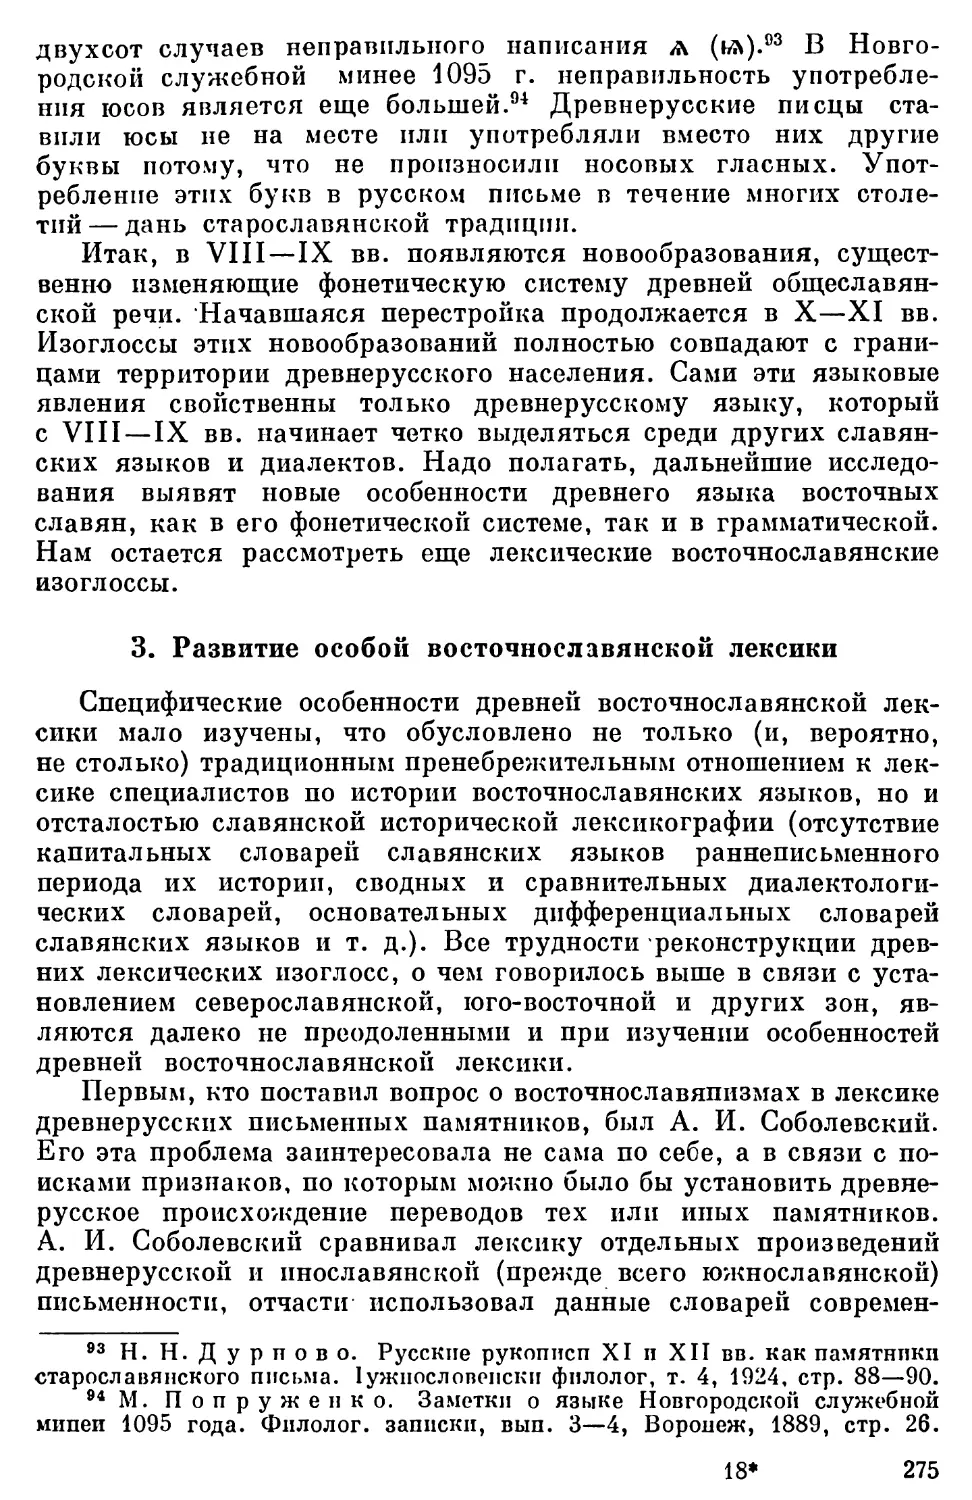 3. Развитие особой восточнославянской лексики